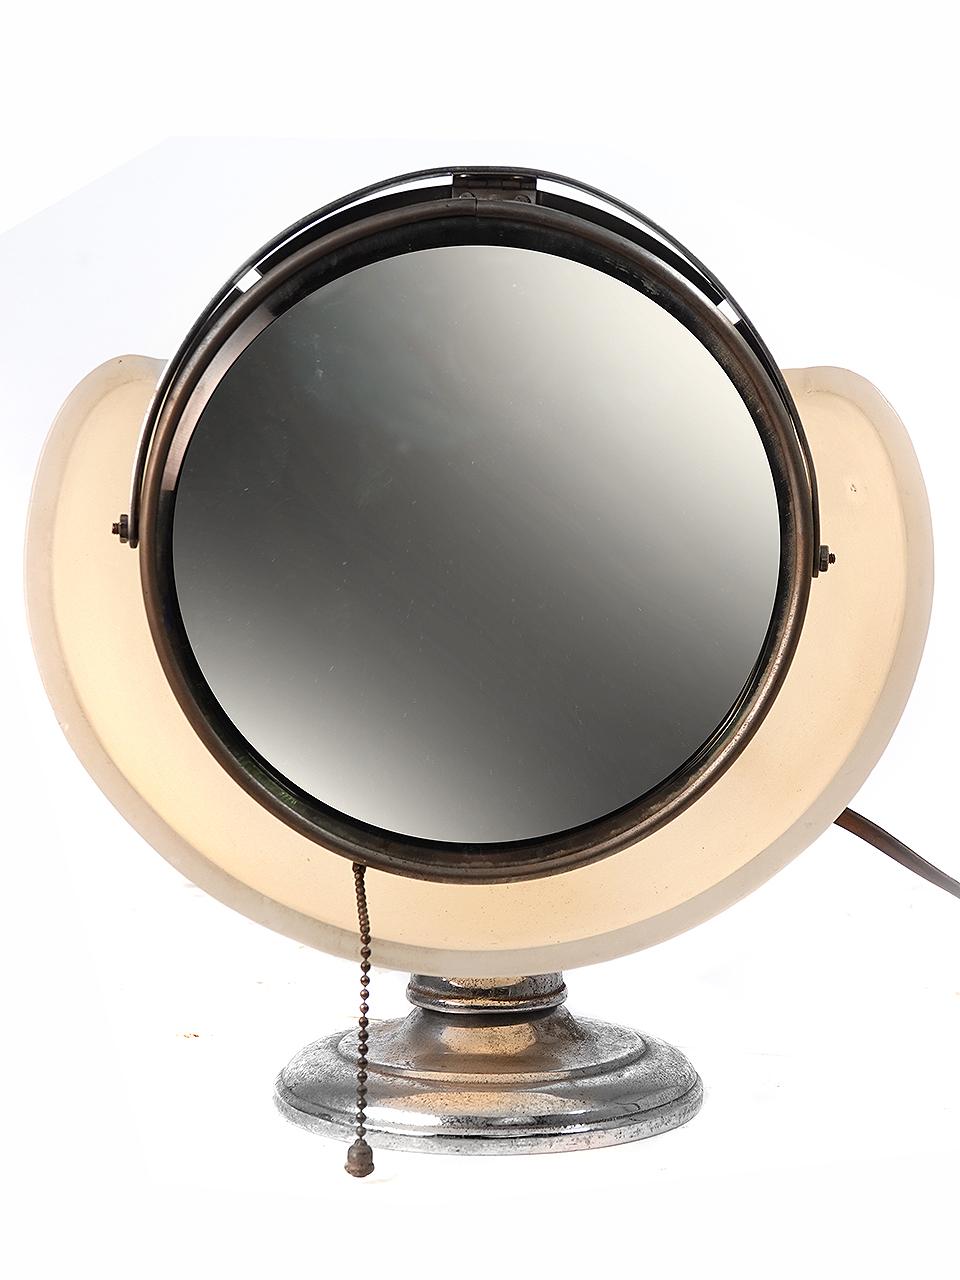 Dies ist eine seltene Lapeer Make-up Spiegel Lampe. Manchmal wird sie auch als Wolkenlampe bezeichnet. Der runde Gelenkspiegel sitzt auf einem Reflektor einer Milchglaslampe. Er gibt ein perfektes, schattenloses und gleichmäßiges Licht ab. Es ist